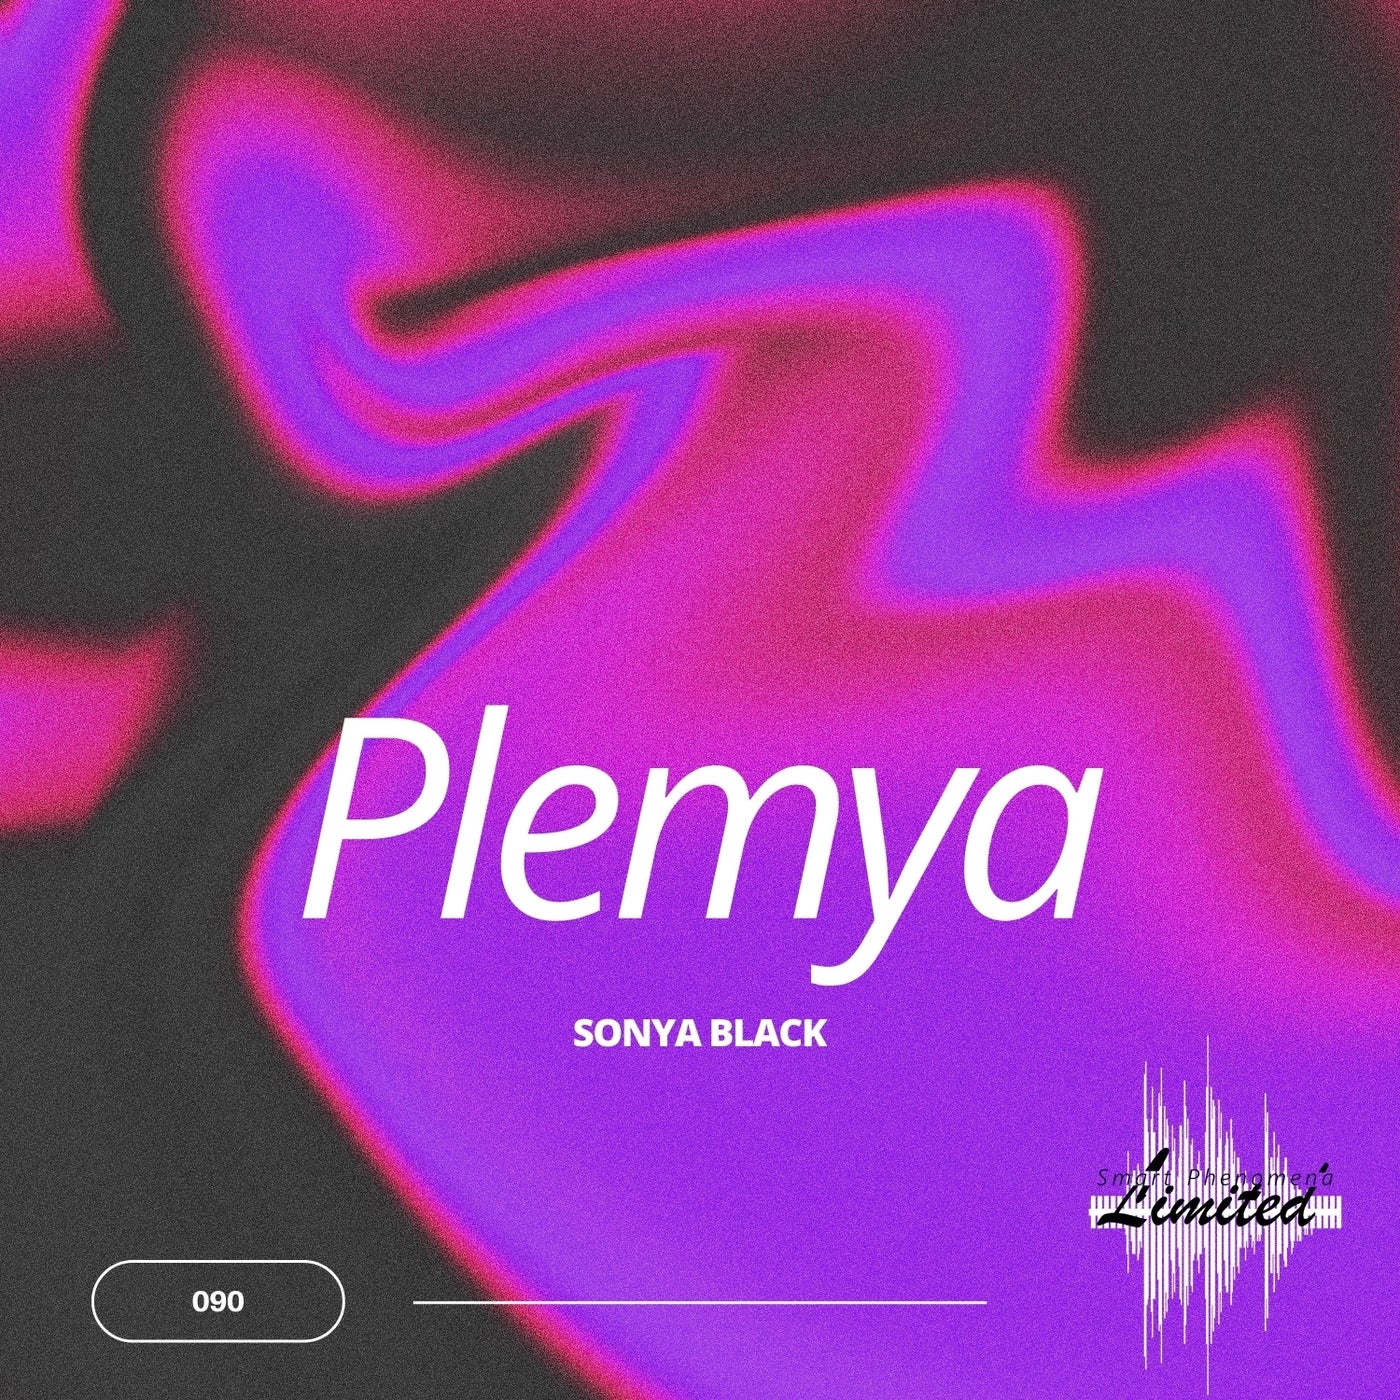 Plemya